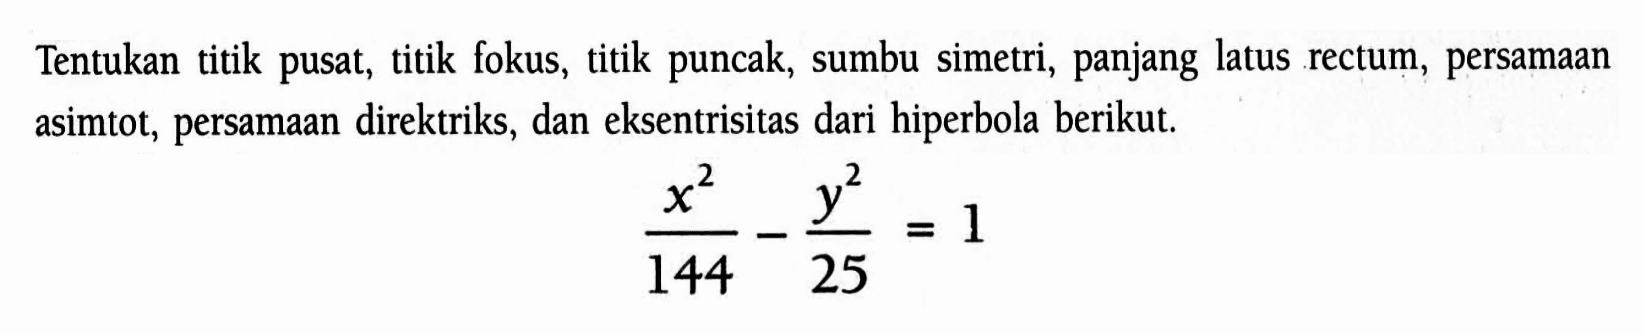 Tentukan titik pusat, titik fokus, titik puncak, sumbu simetri, panjang latus rectum, persamaan asimtot, persamaan direktriks, dan eksentrisitas dari hiperbola berikut. (x^2/144)-(y^2/25)=1